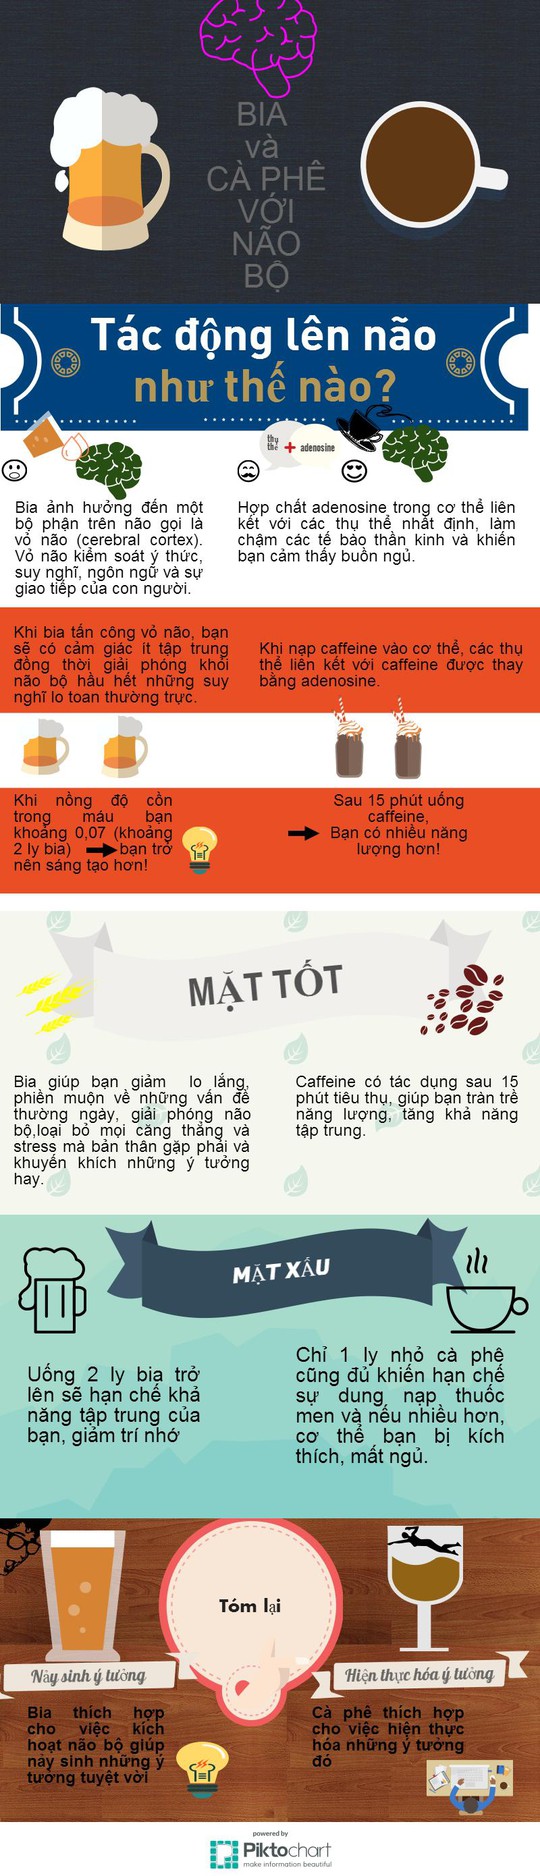 Infographic] Ảnh hưởng của bia và cà phê lên não bộ - Báo Người ...